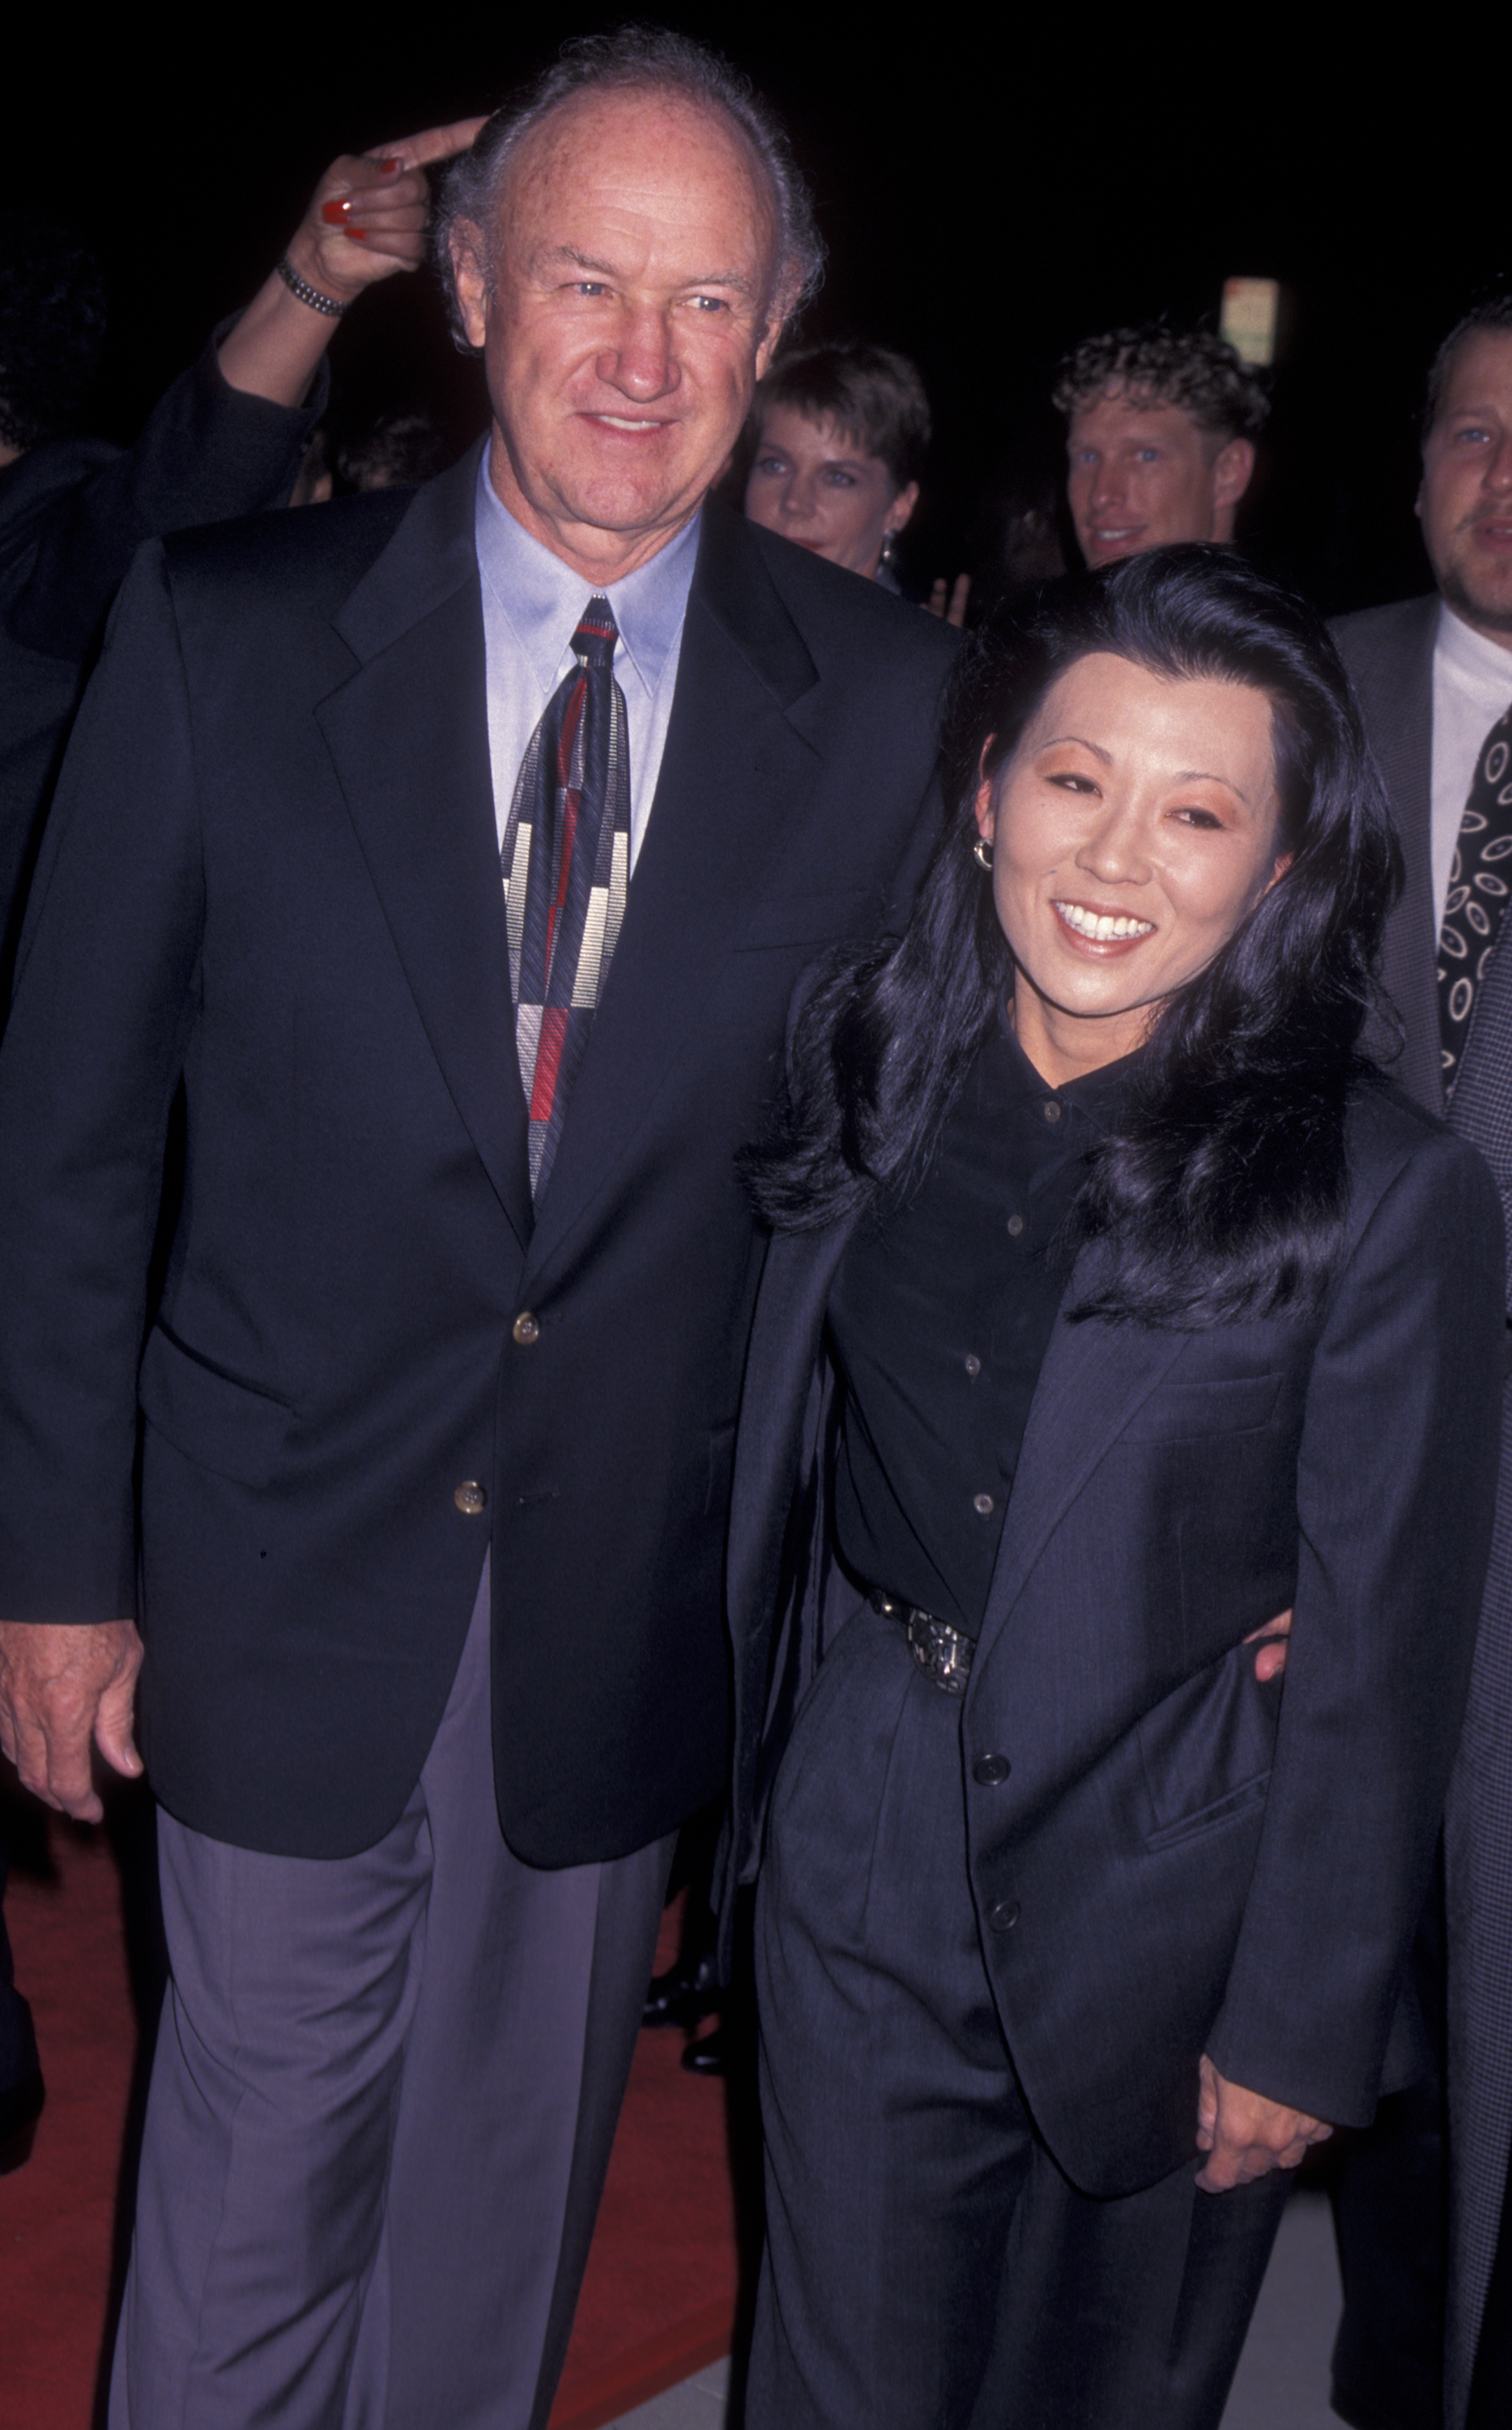 L'acteur Gene Hackman et son épouse Betsy Hackman assistent à la première de "The Chamber" le 2 octobre 1996, à l'Academy Theater de Beverly Hills, en Californie. | Source : Getty Images